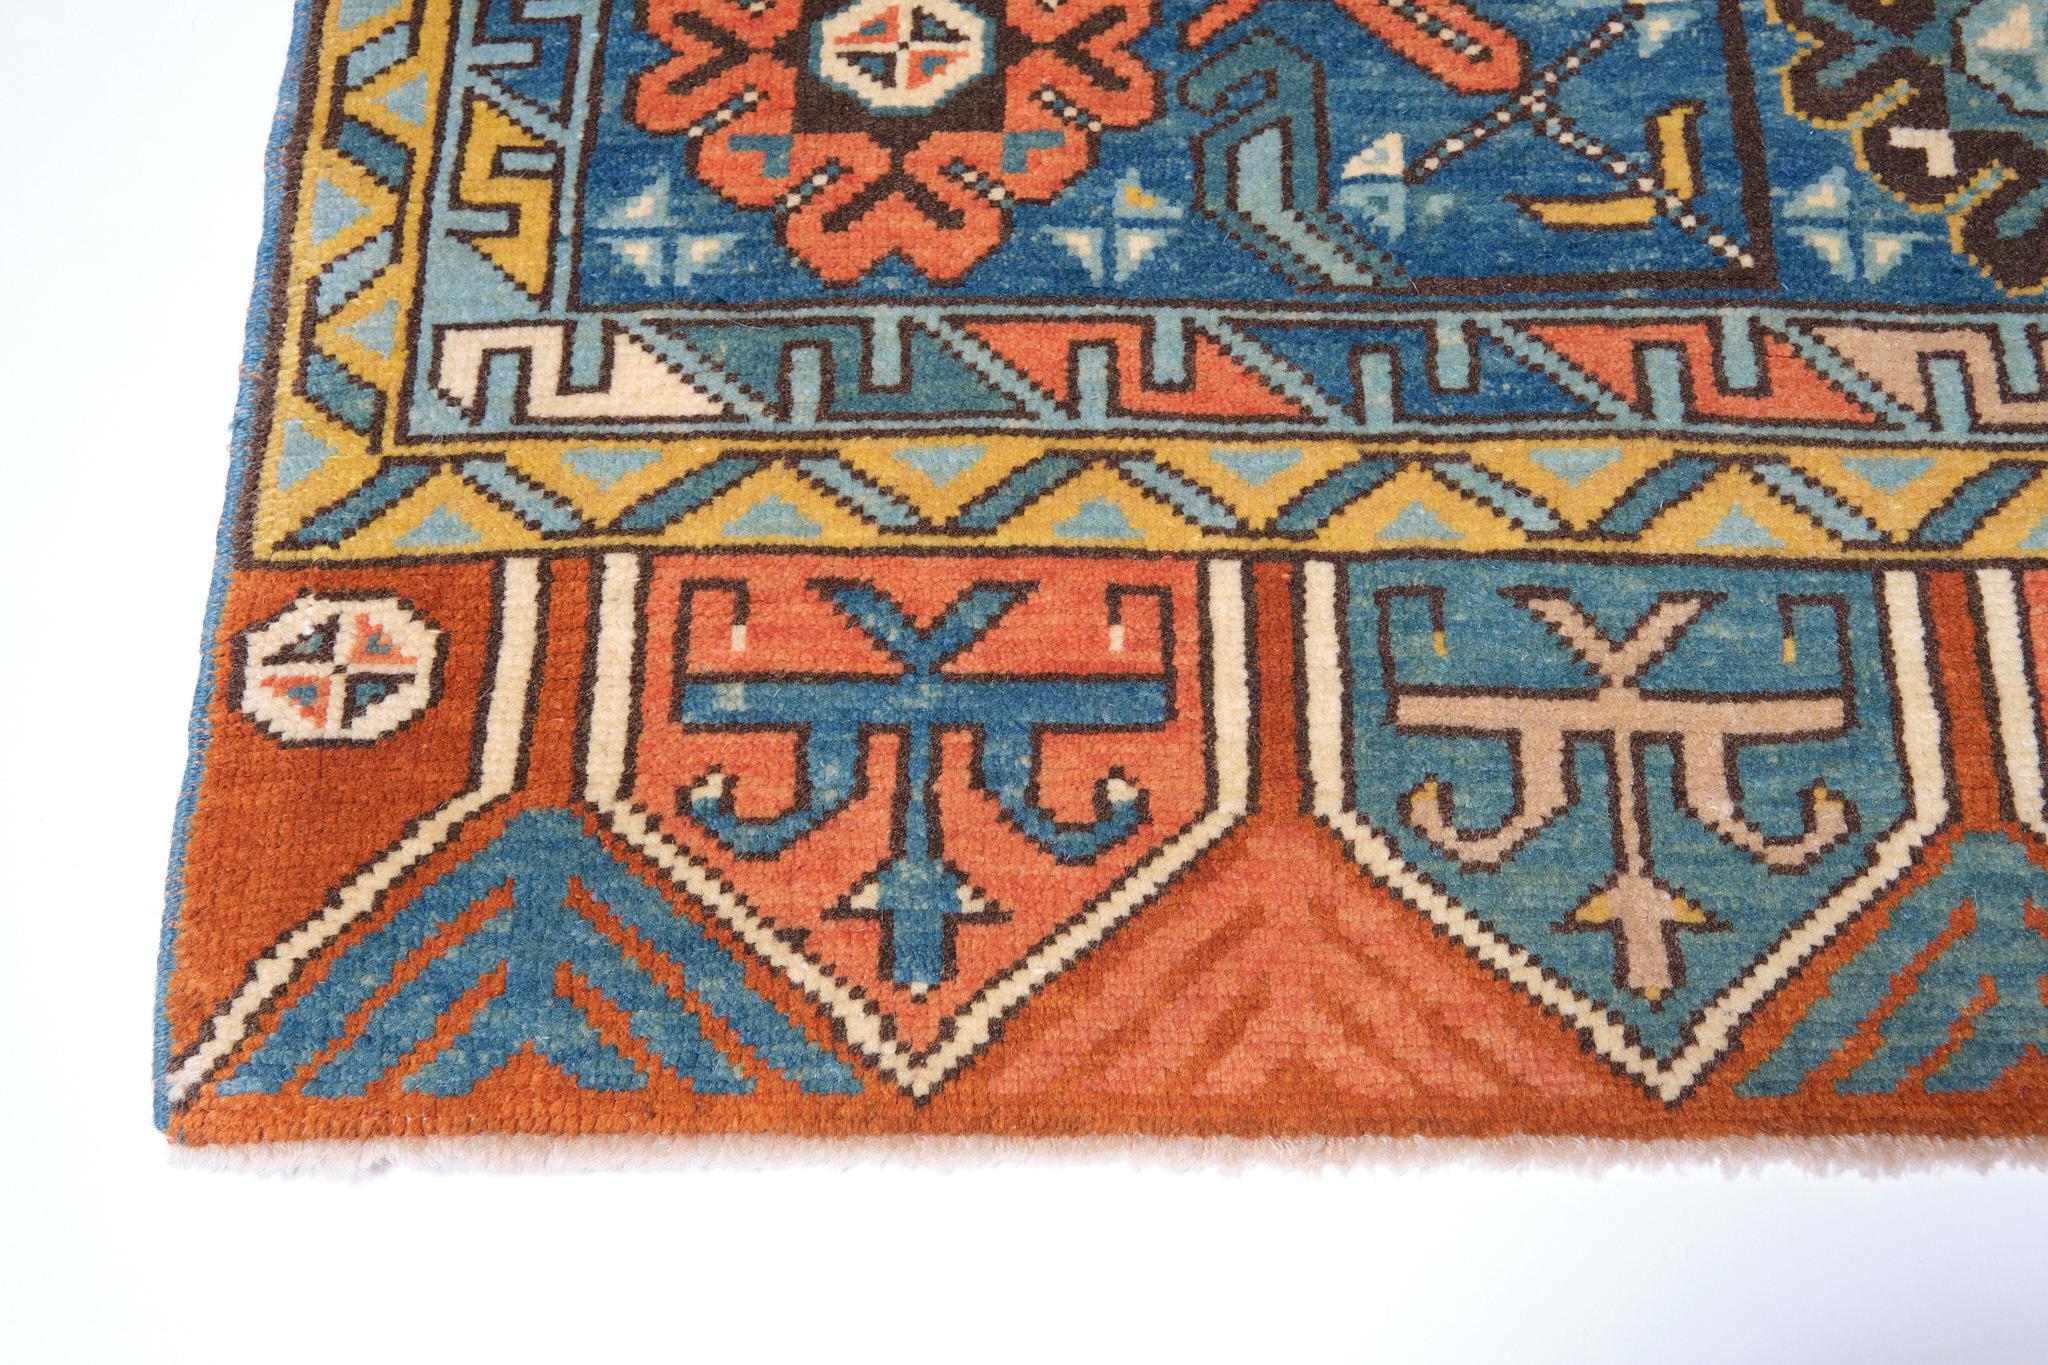 Dies ist ein Doppelmedaillon als Hauptelement des Musters eines Teppichs aus dem 18. Jahrhundert aus der Region Konya, Zentralanatolien in der Türkei. Teppiche dieses Typs mit zwei Medaillons tauchen häufig in Gemälden der venezianischen und der